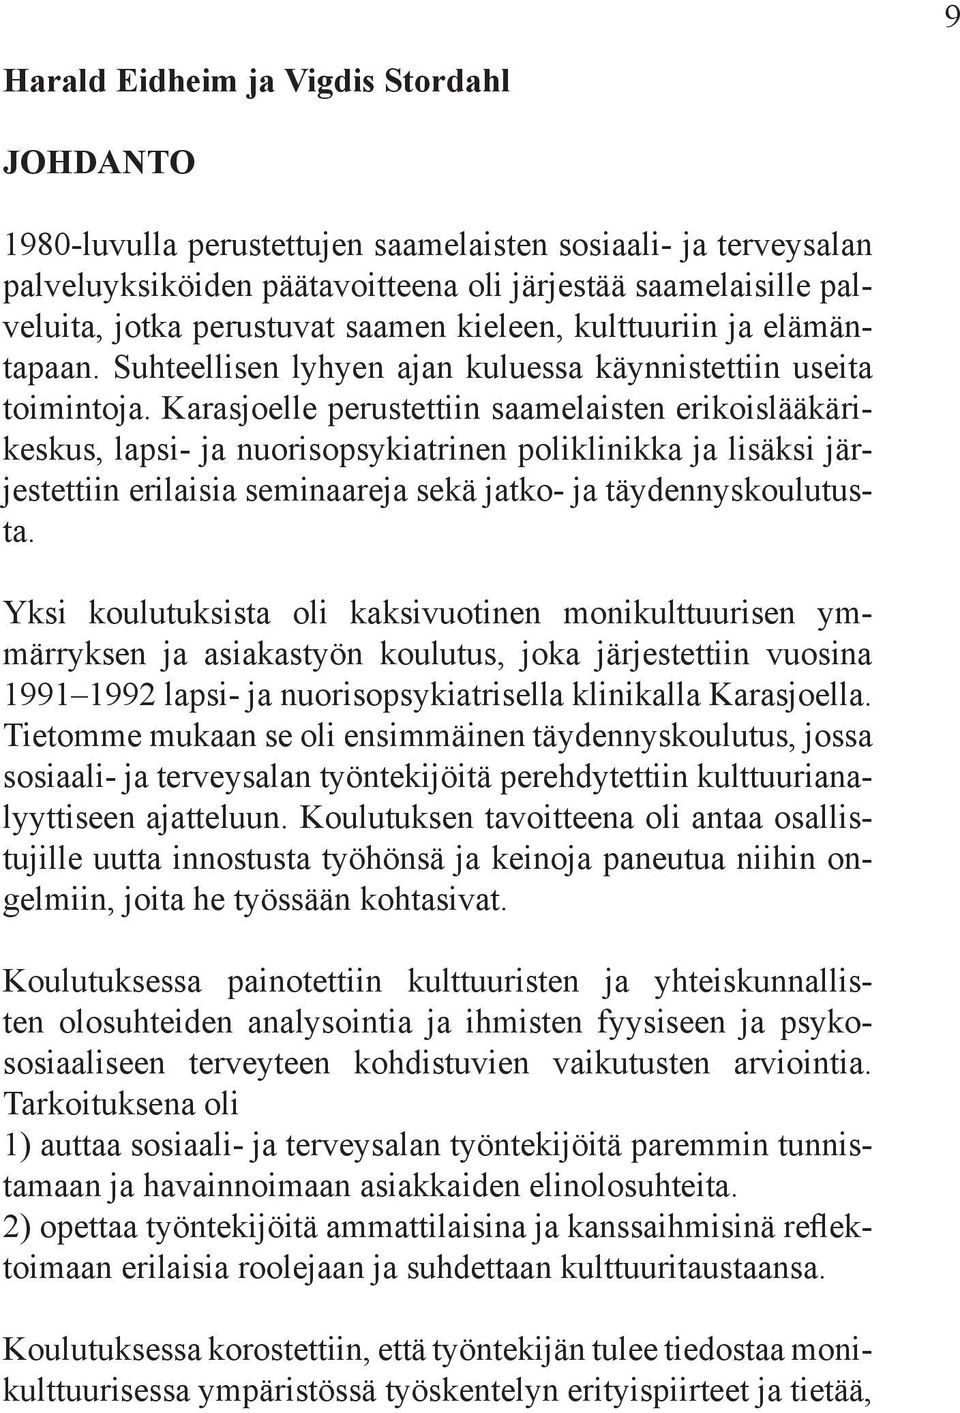 Karasjoelle perustettiin saamelaisten erikoislääkärikeskus, lapsi- ja nuorisopsykiatrinen poliklinikka ja lisäksi järjestettiin erilaisia seminaareja sekä jatko- ja täydennyskoulutusta.